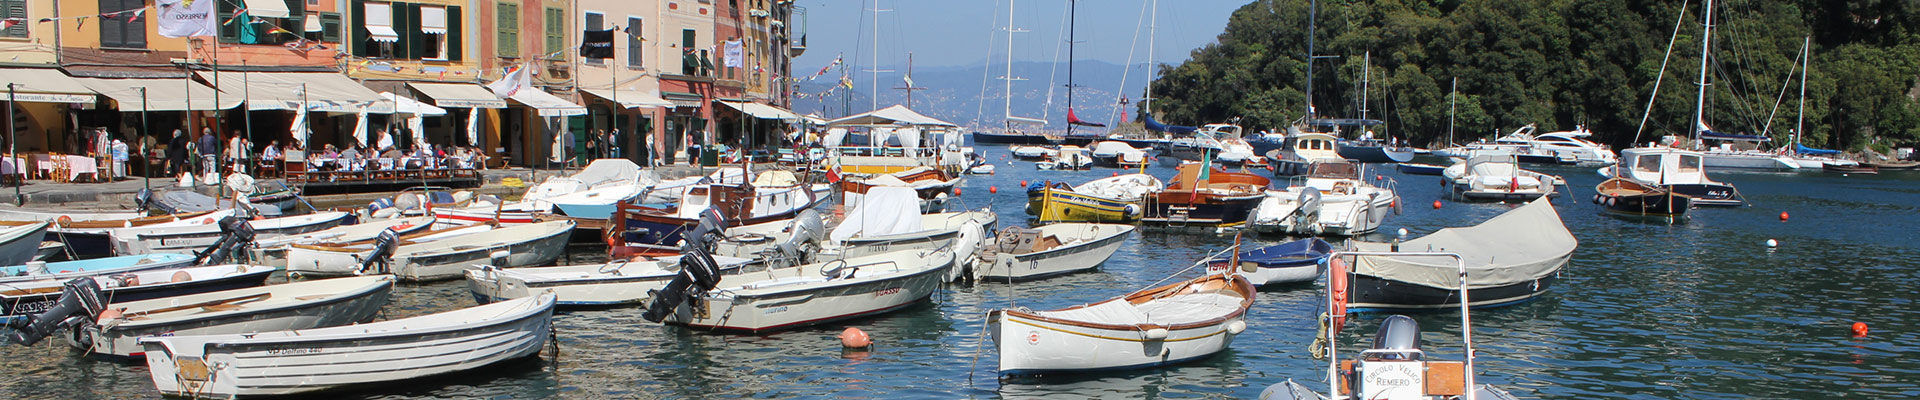 Escursioni e trasporti turistici via mare | Avvistamento cetacei | Giro del Porto di Genova